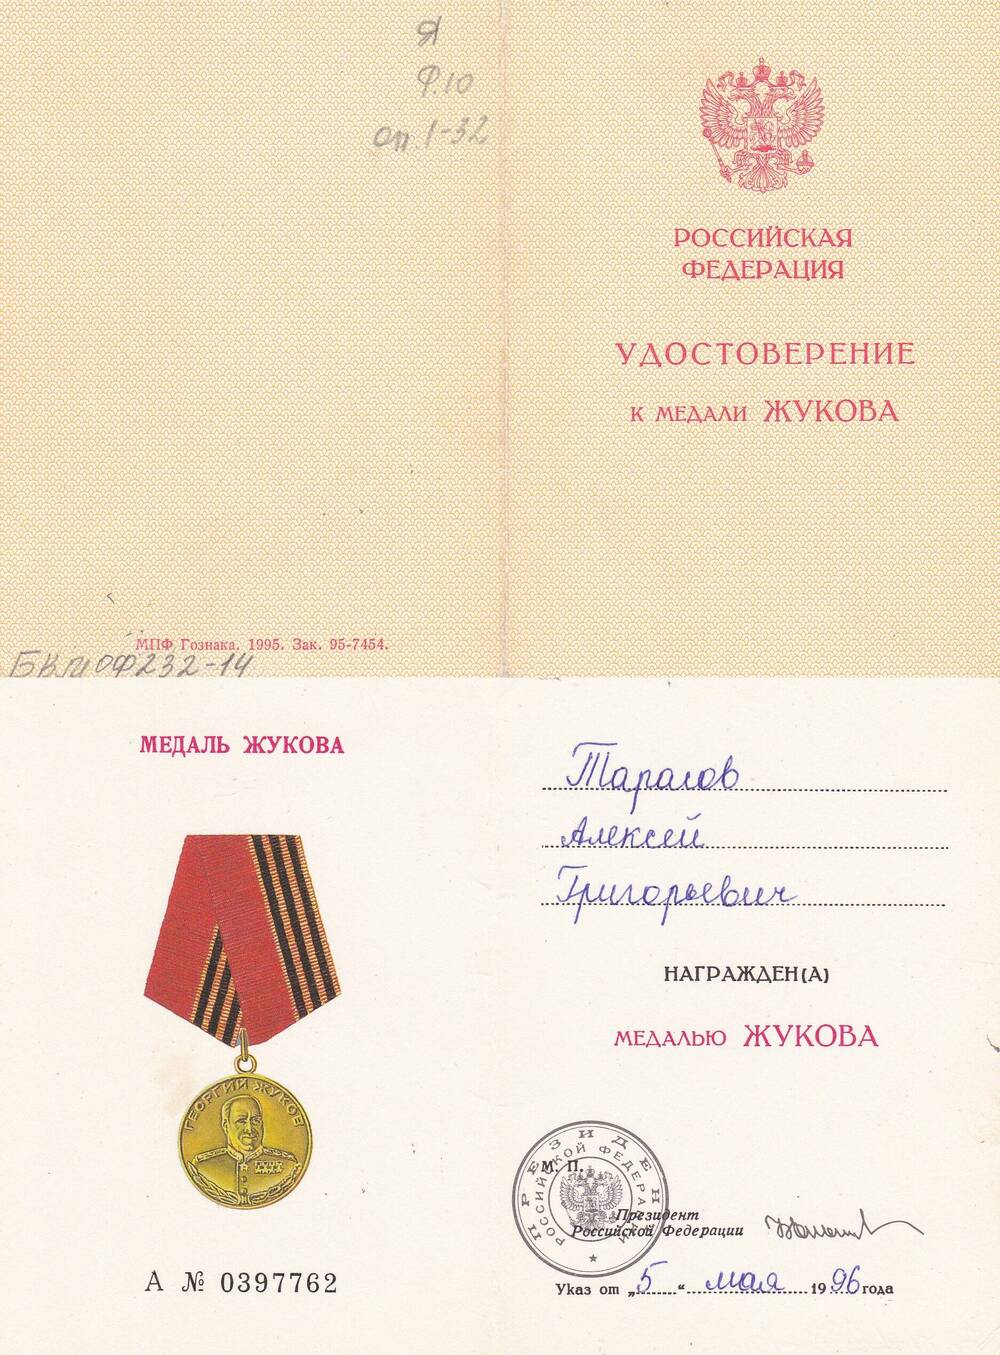 Удостоверение к медали Жукова А №0397762, Тарасова А.Г., ветерана ВОВ.